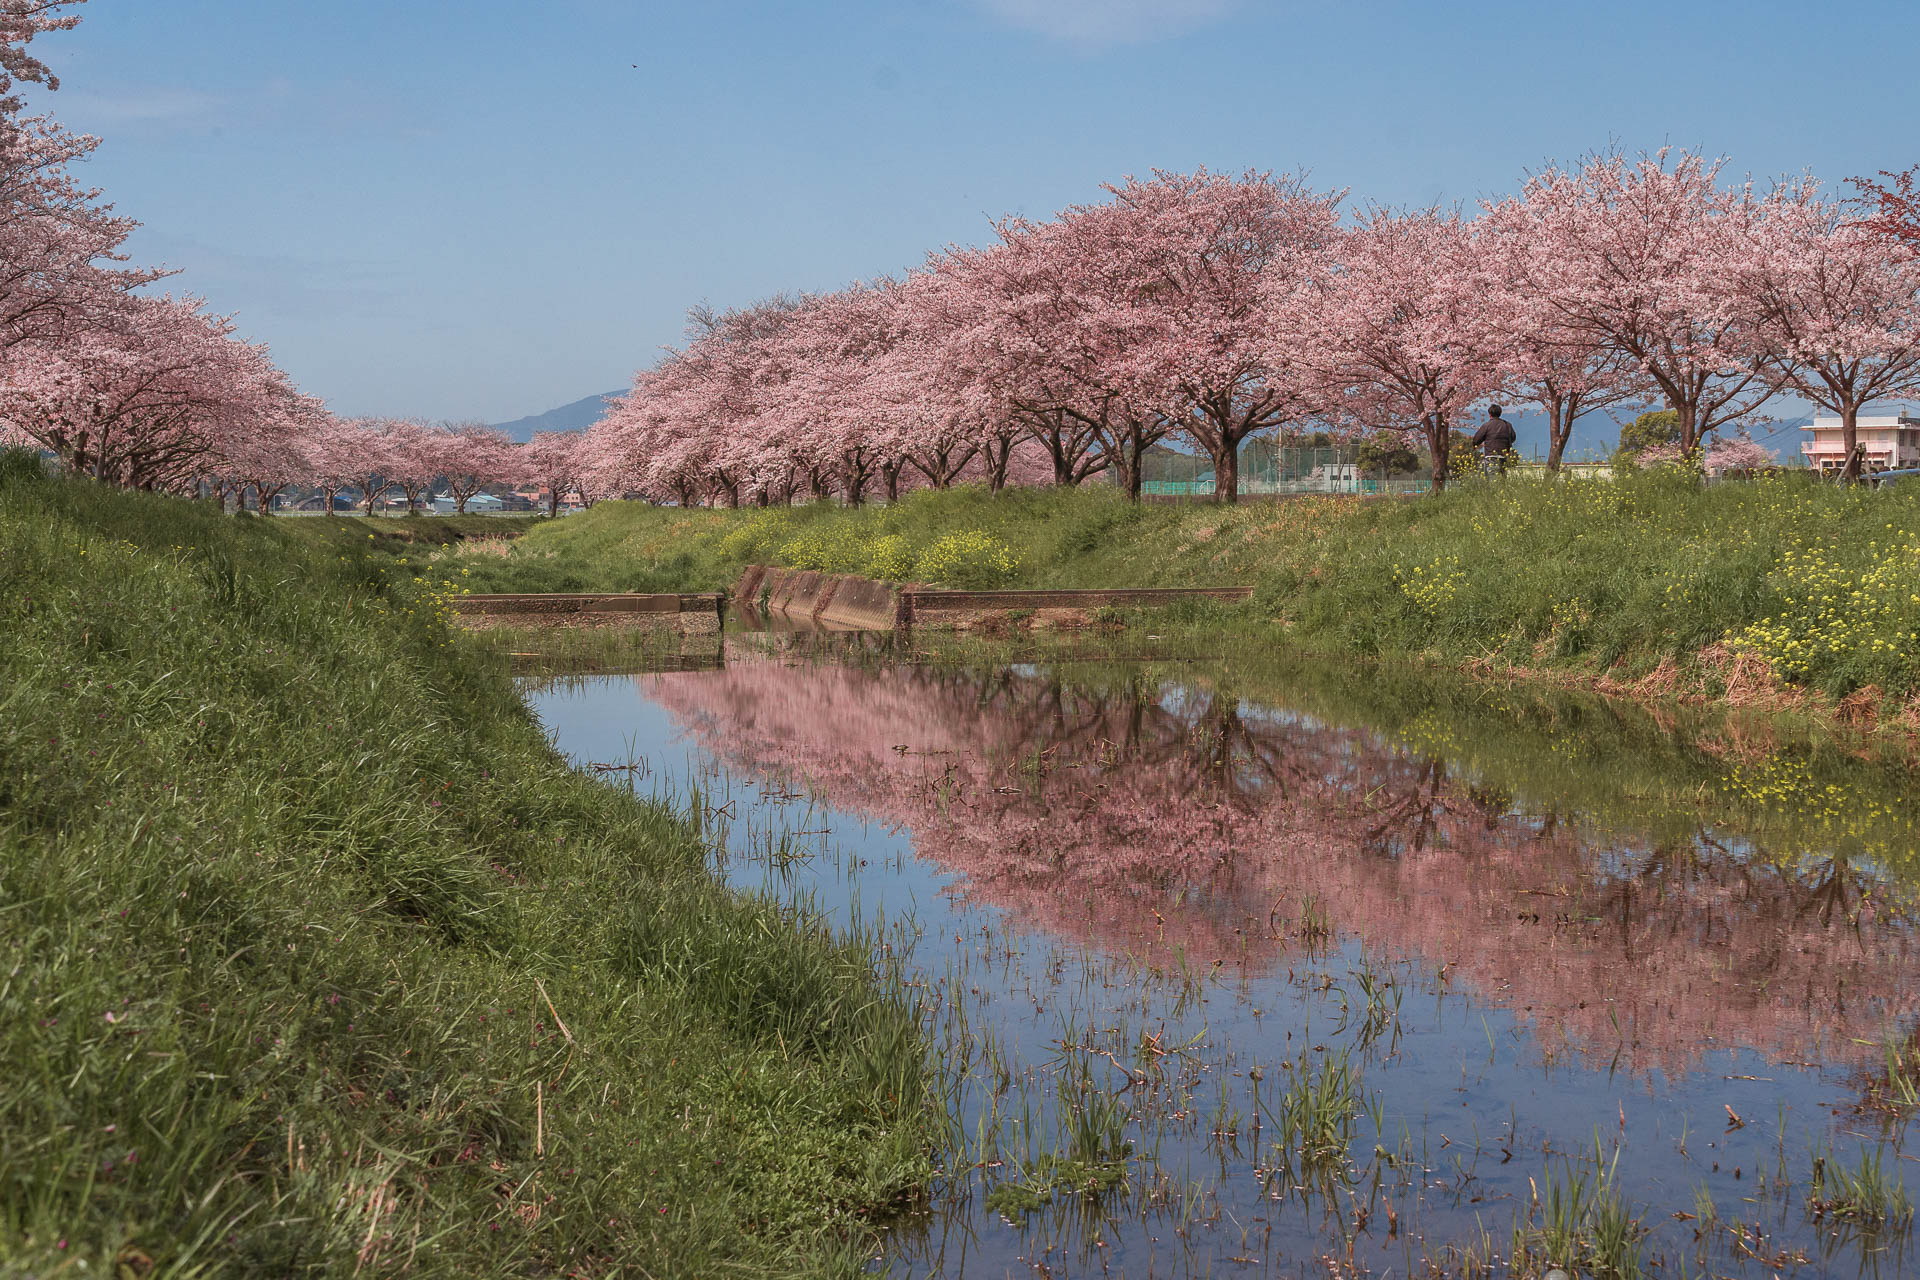 Chikuzen: A hidden gem to see beautiful cherry blossoms in Japan